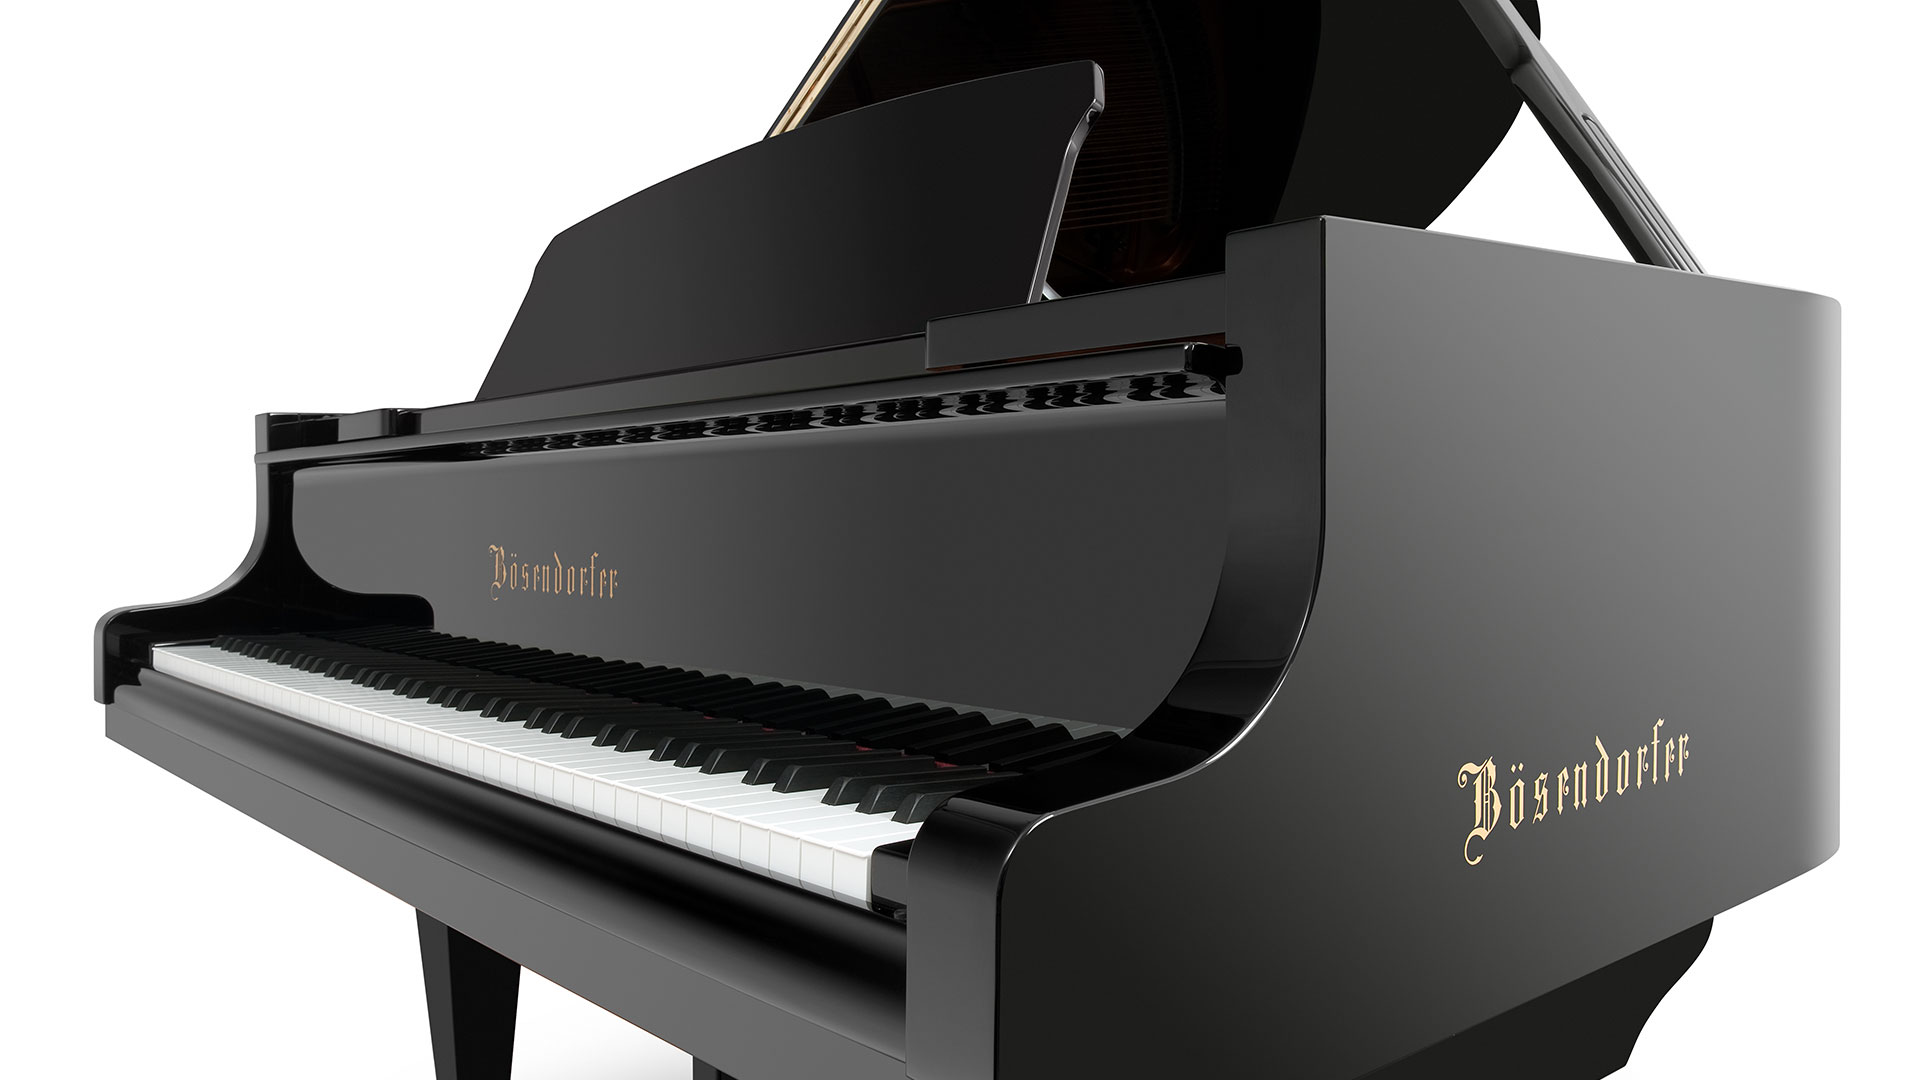 Bosendorfer piano Model 185-vc grand piano